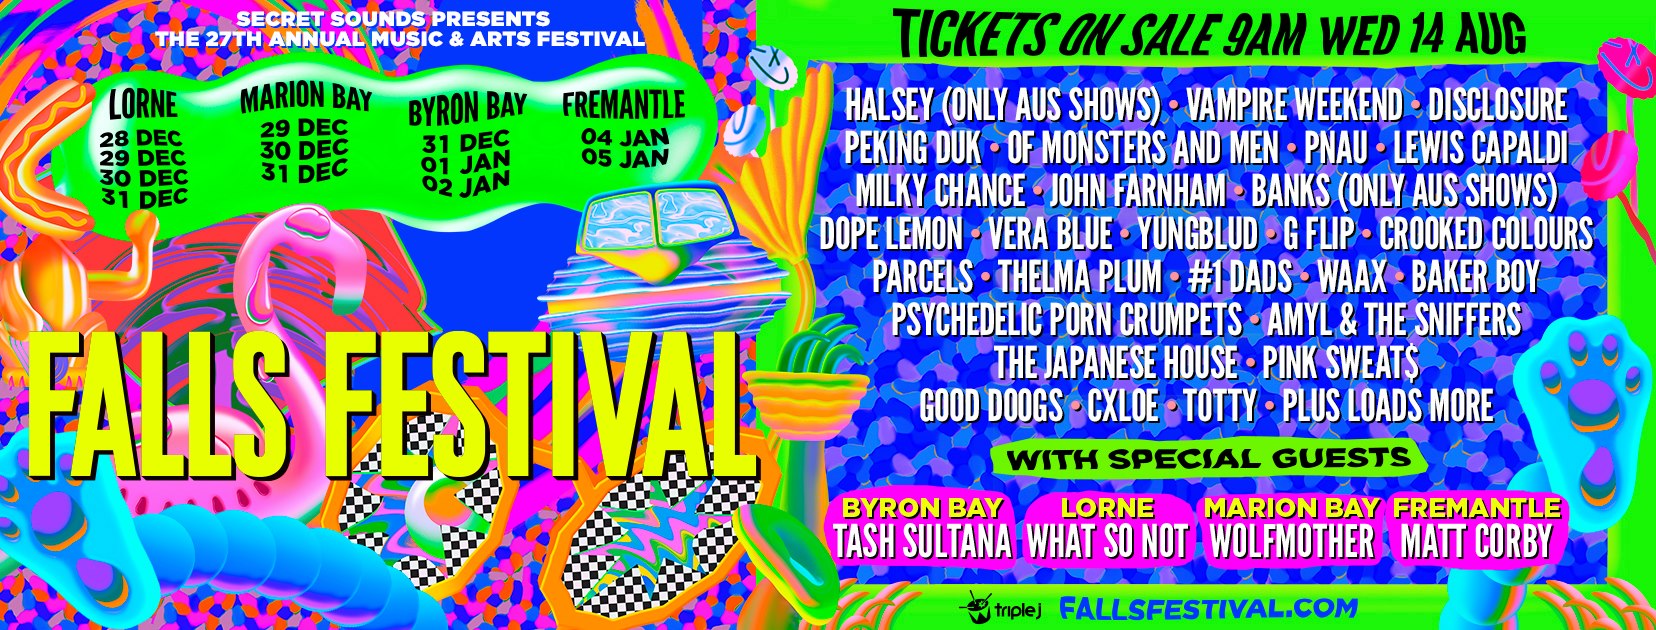 falls-festival-lineup-2019-poster-oz-edm